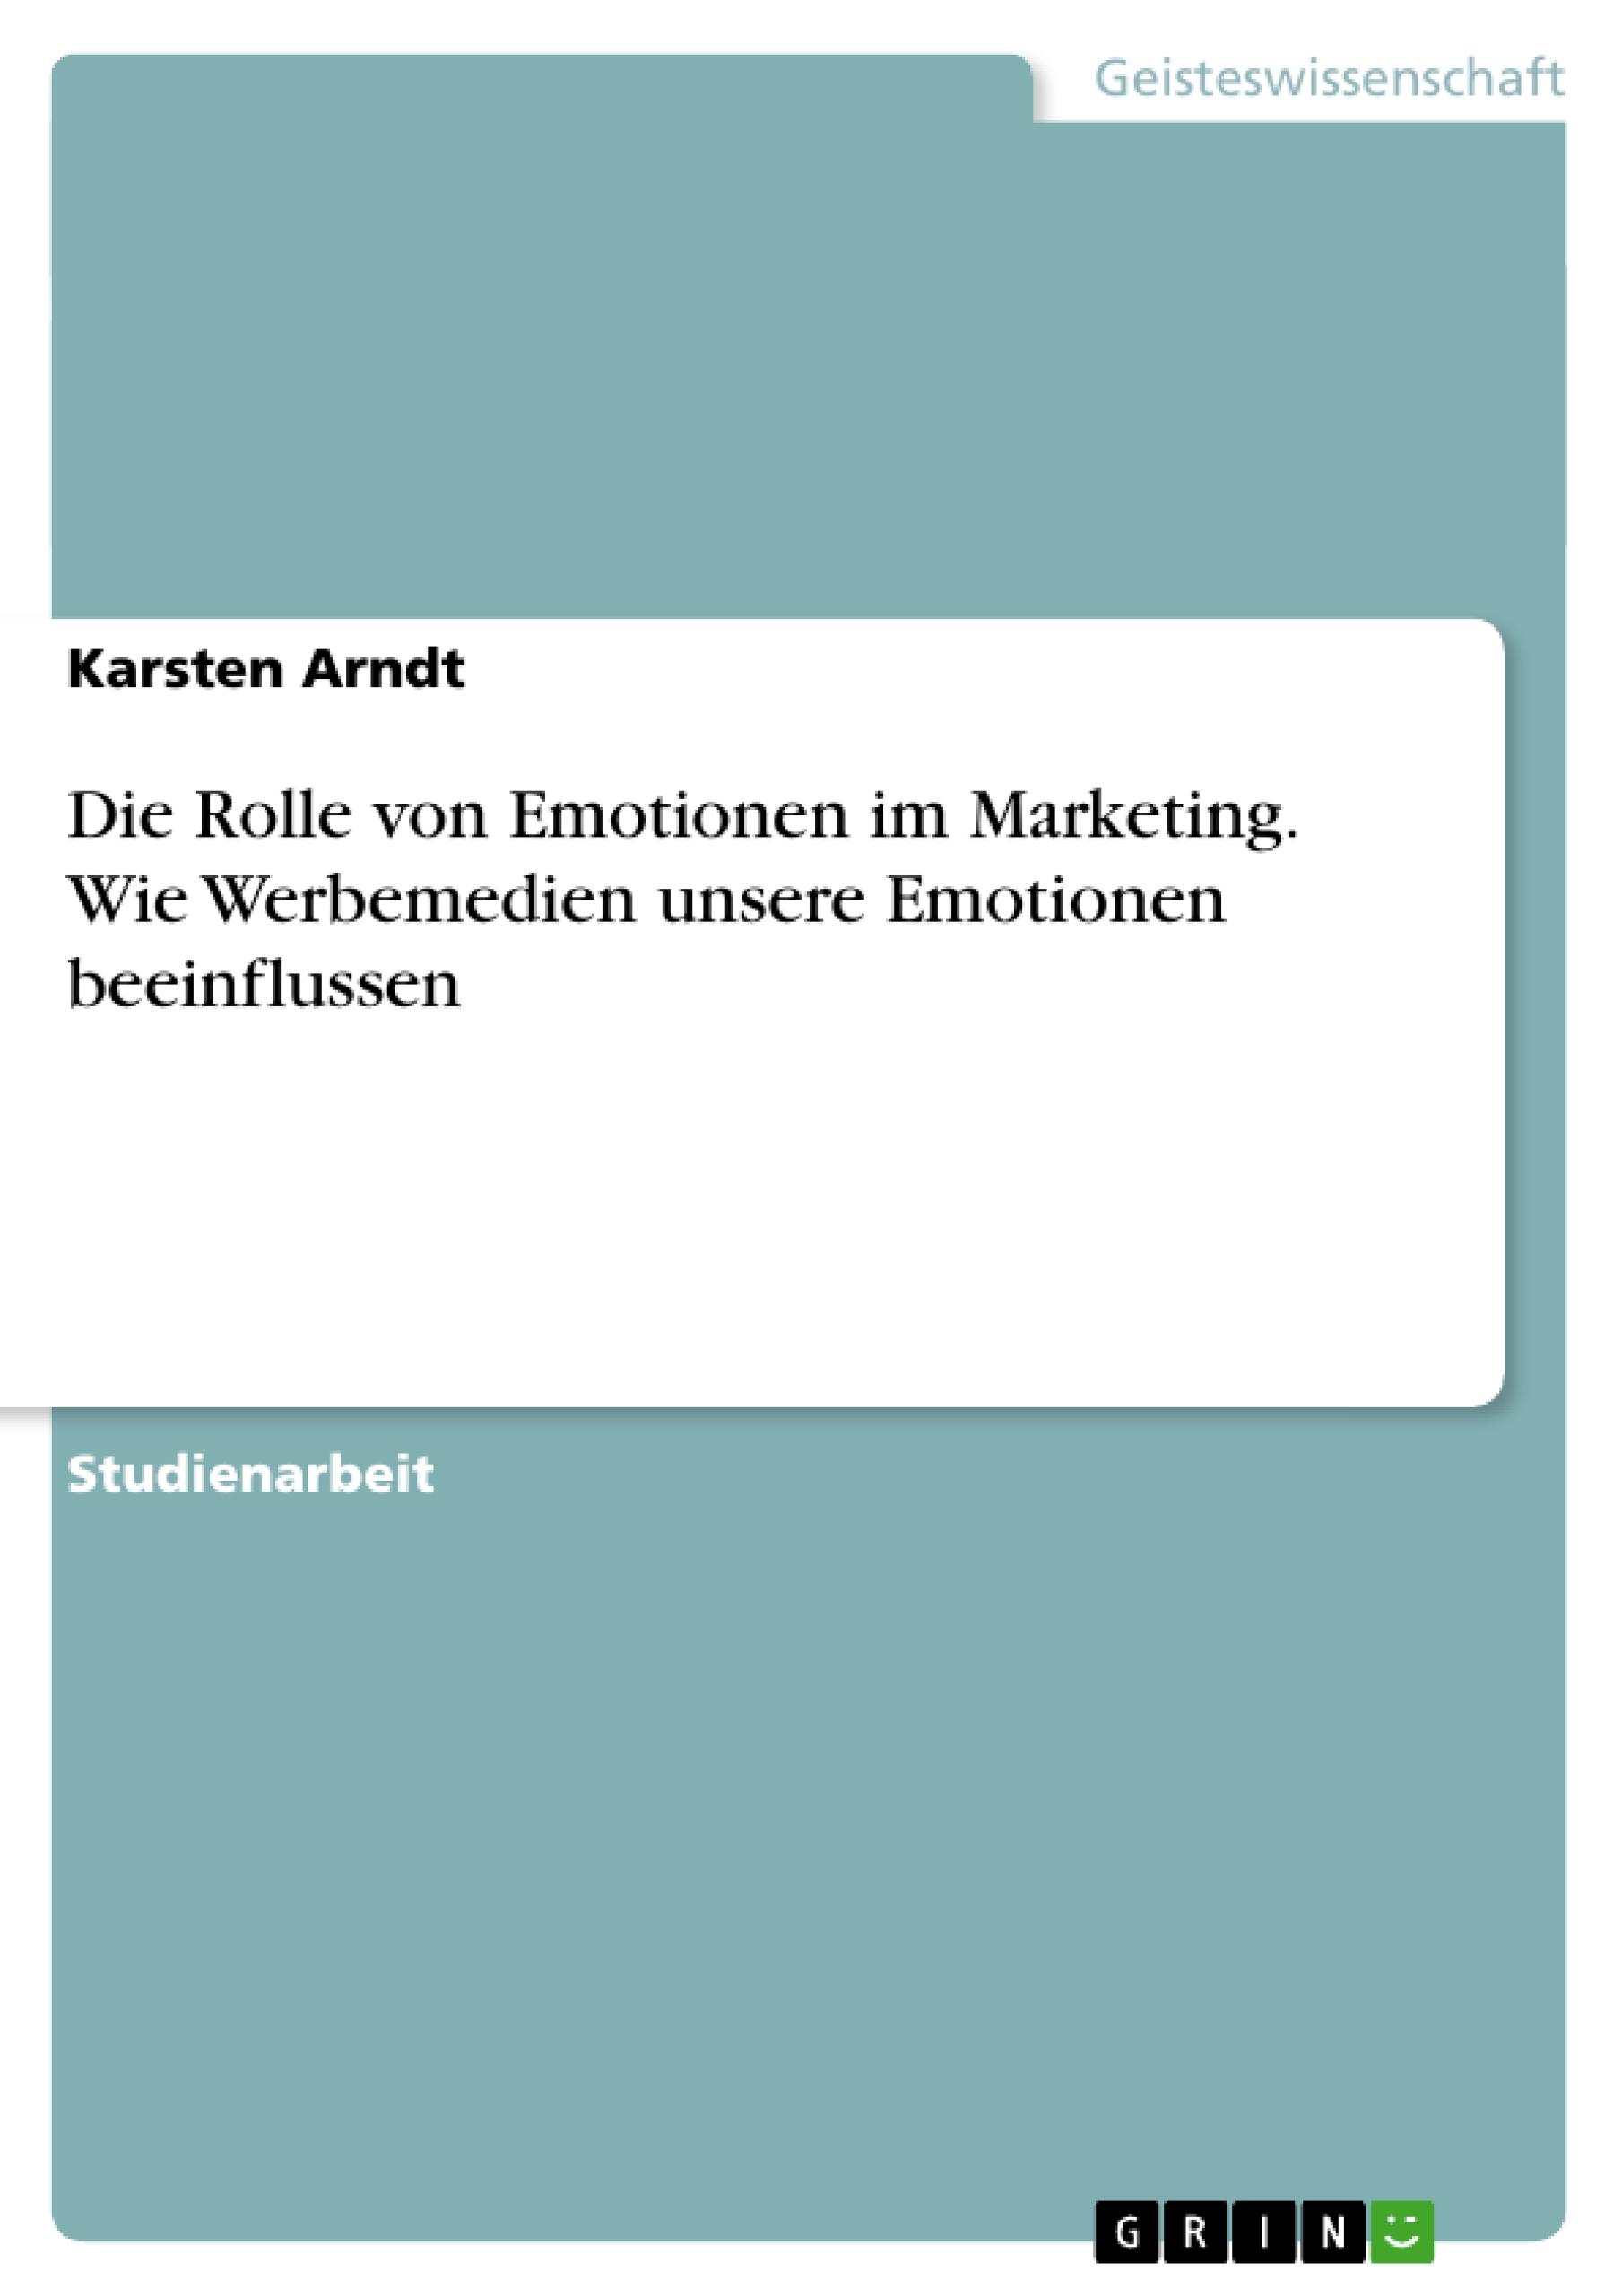 Die Rolle von Emotionen im Marketing. Wie Werbemedien unsere Emotionen beeinflussen / Karsten Arndt / Taschenbuch / Paperback / 32 S. / Deutsch / 2014 / GRIN Verlag / EAN 9783656622376 - Arndt, Karsten